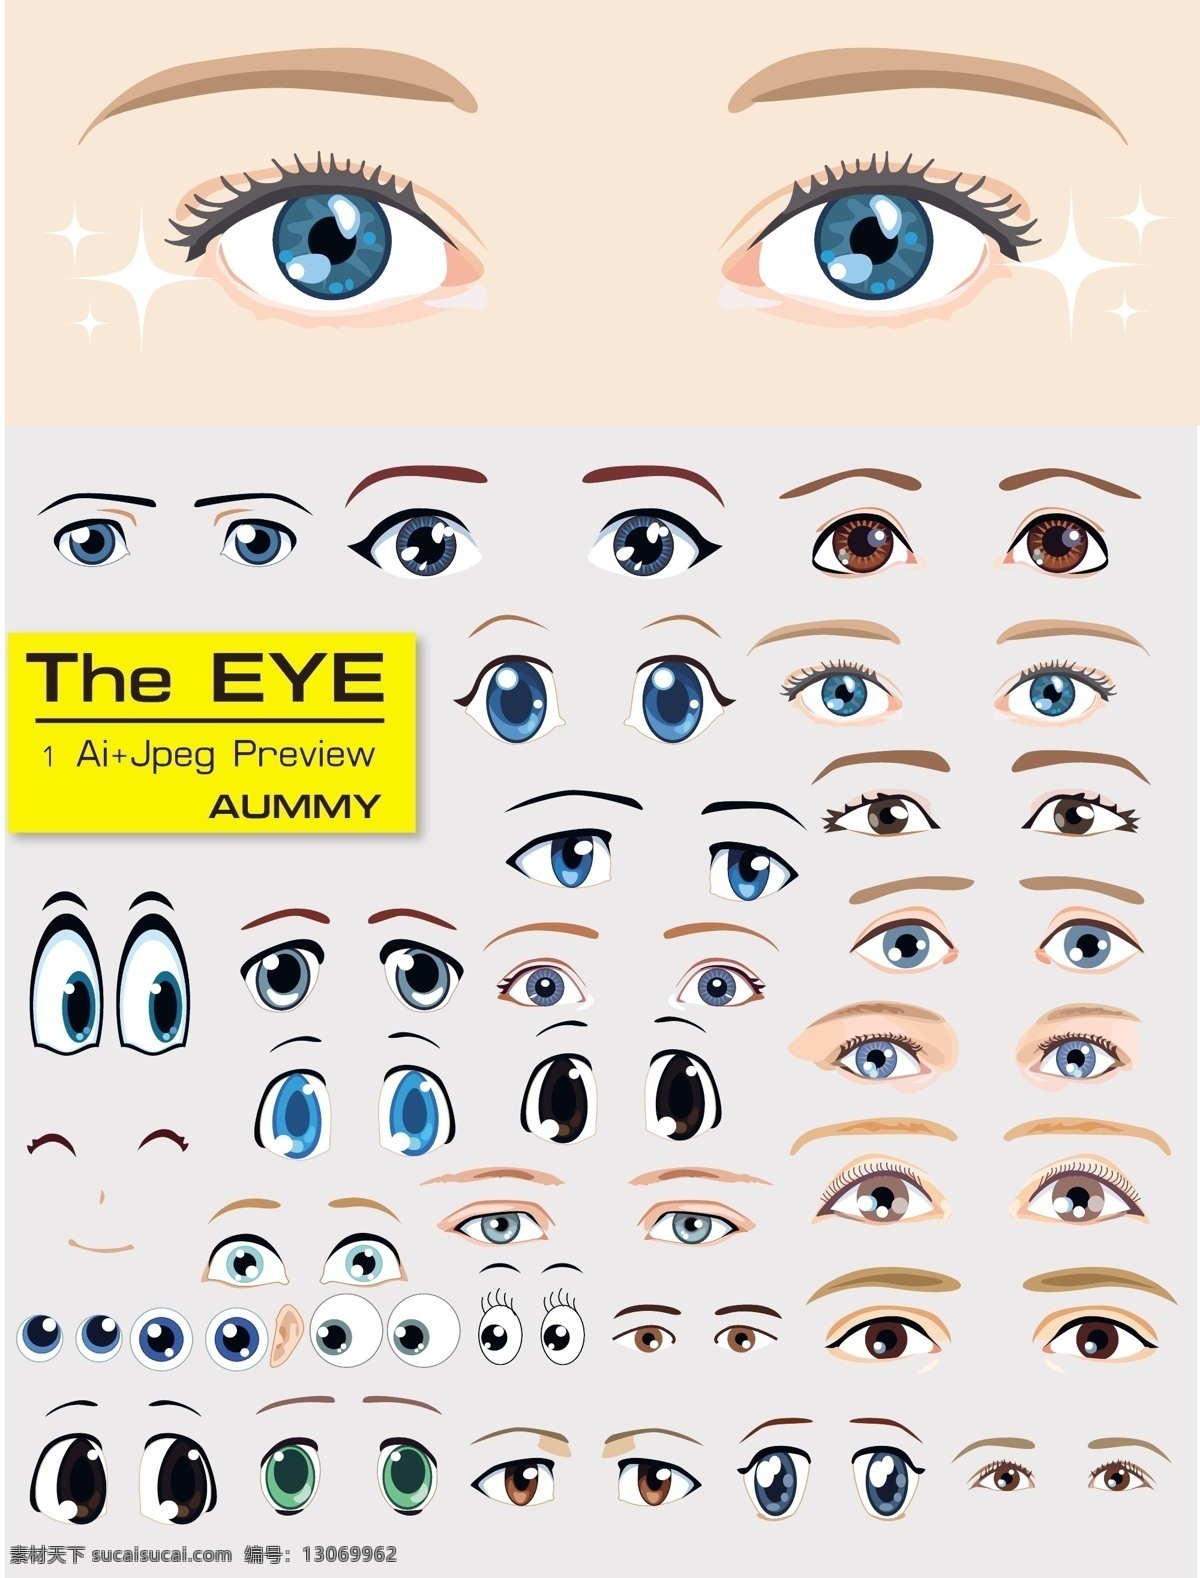 各种各样 眼睛 蓝色眼睛 黑色眼睛 绿色眼睛 黄色眼睛